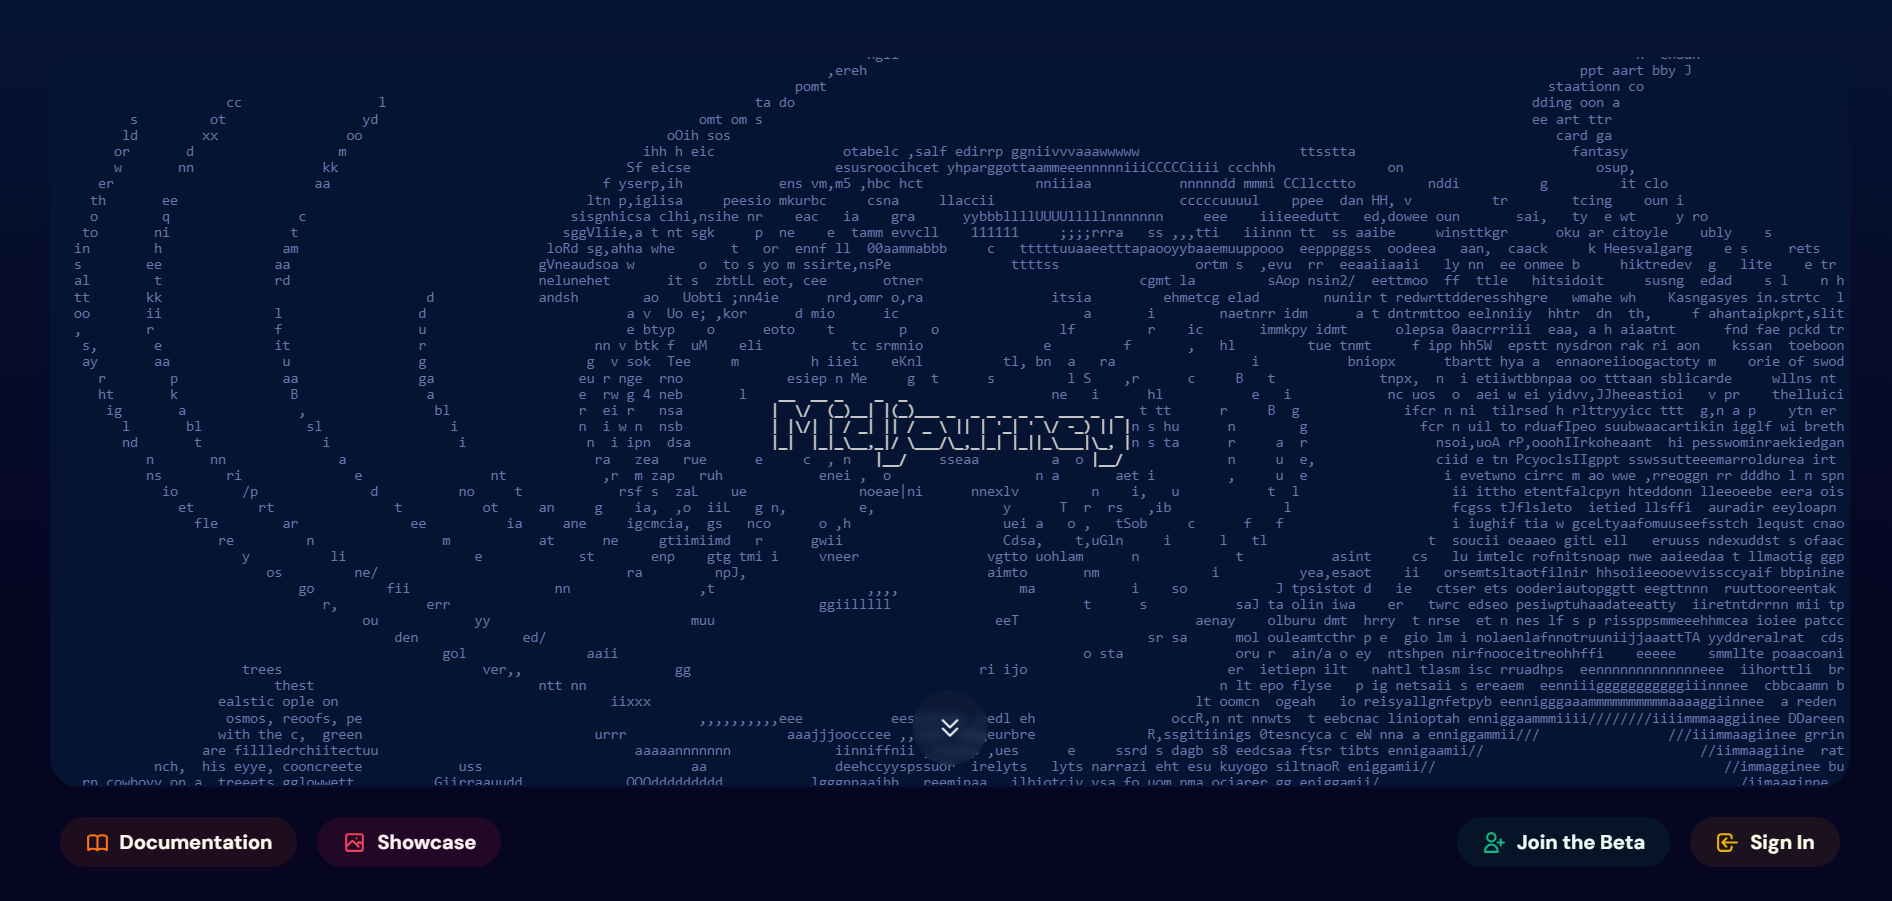  Midjourney è un generatore di immagini basato su intelligenza artificiale. 